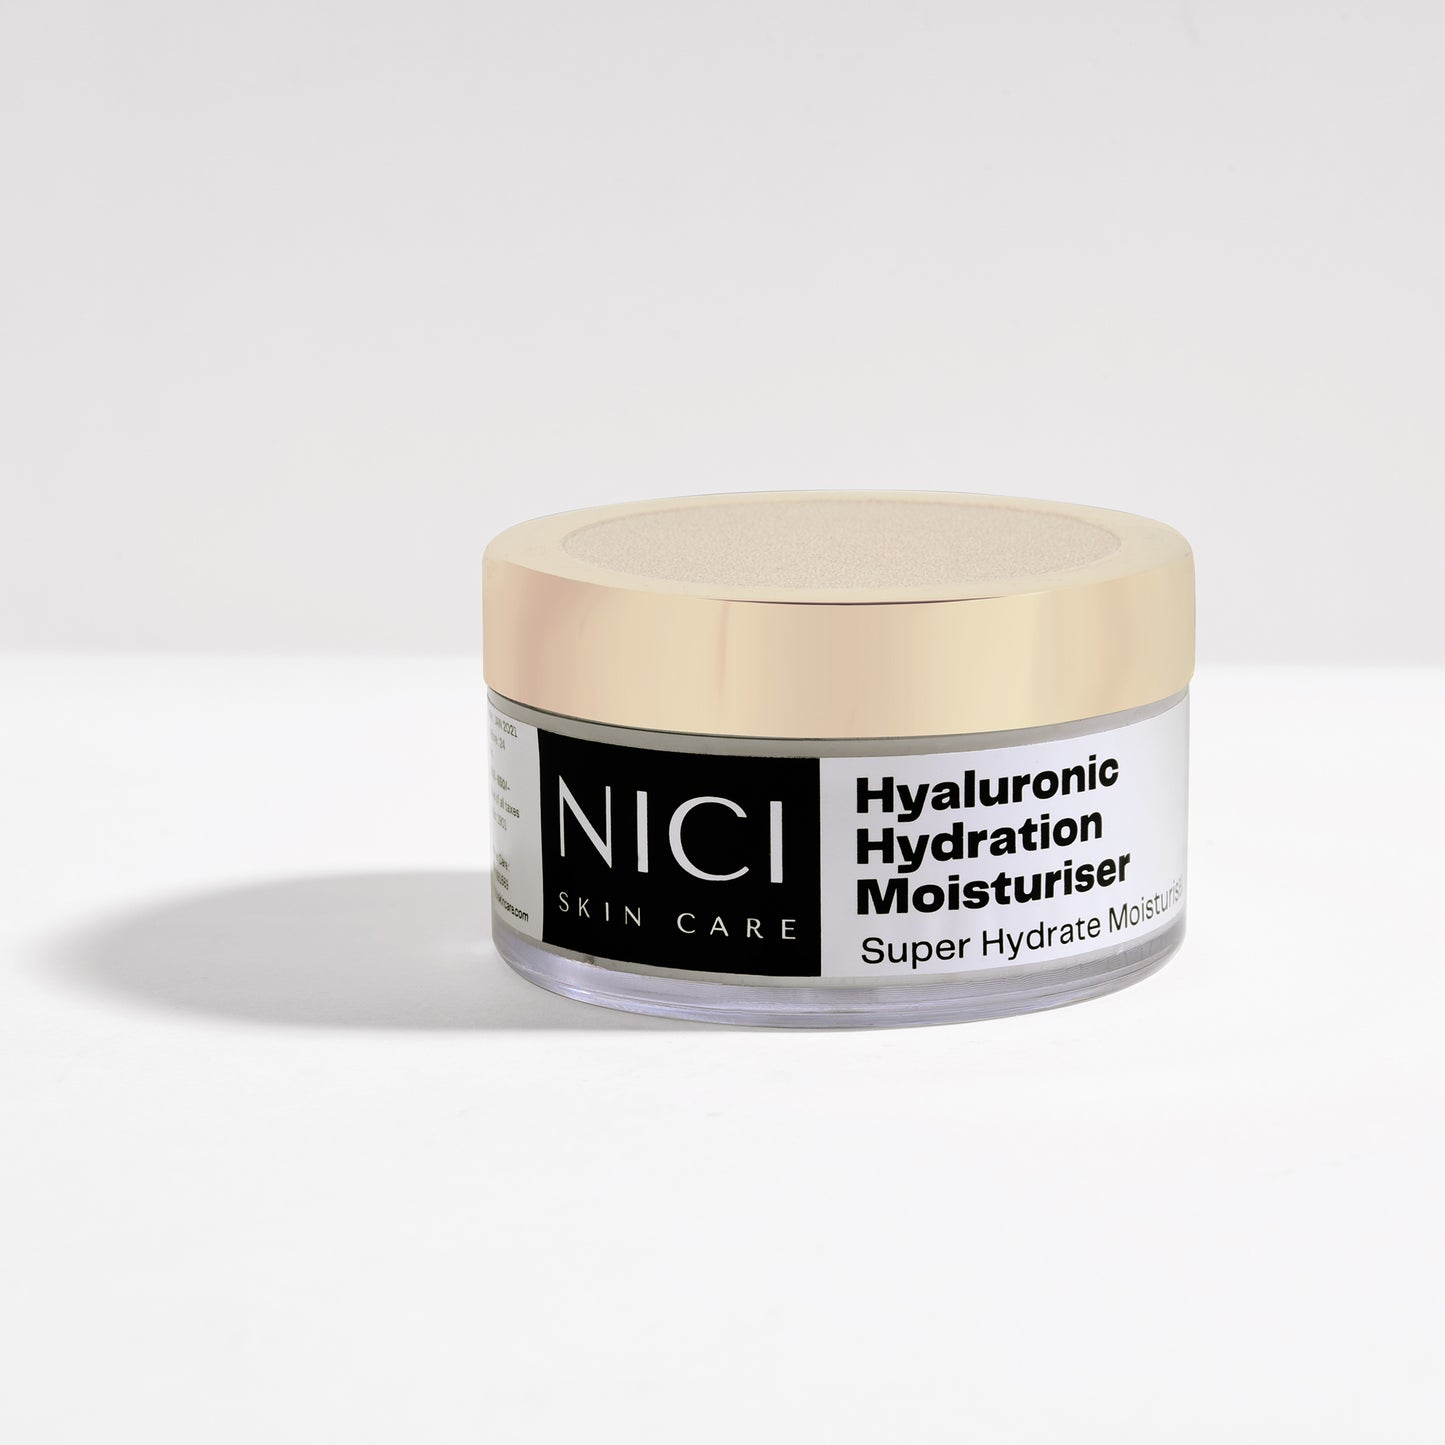 Hyaluronic Hydration Moisturiser Nici Skin Care